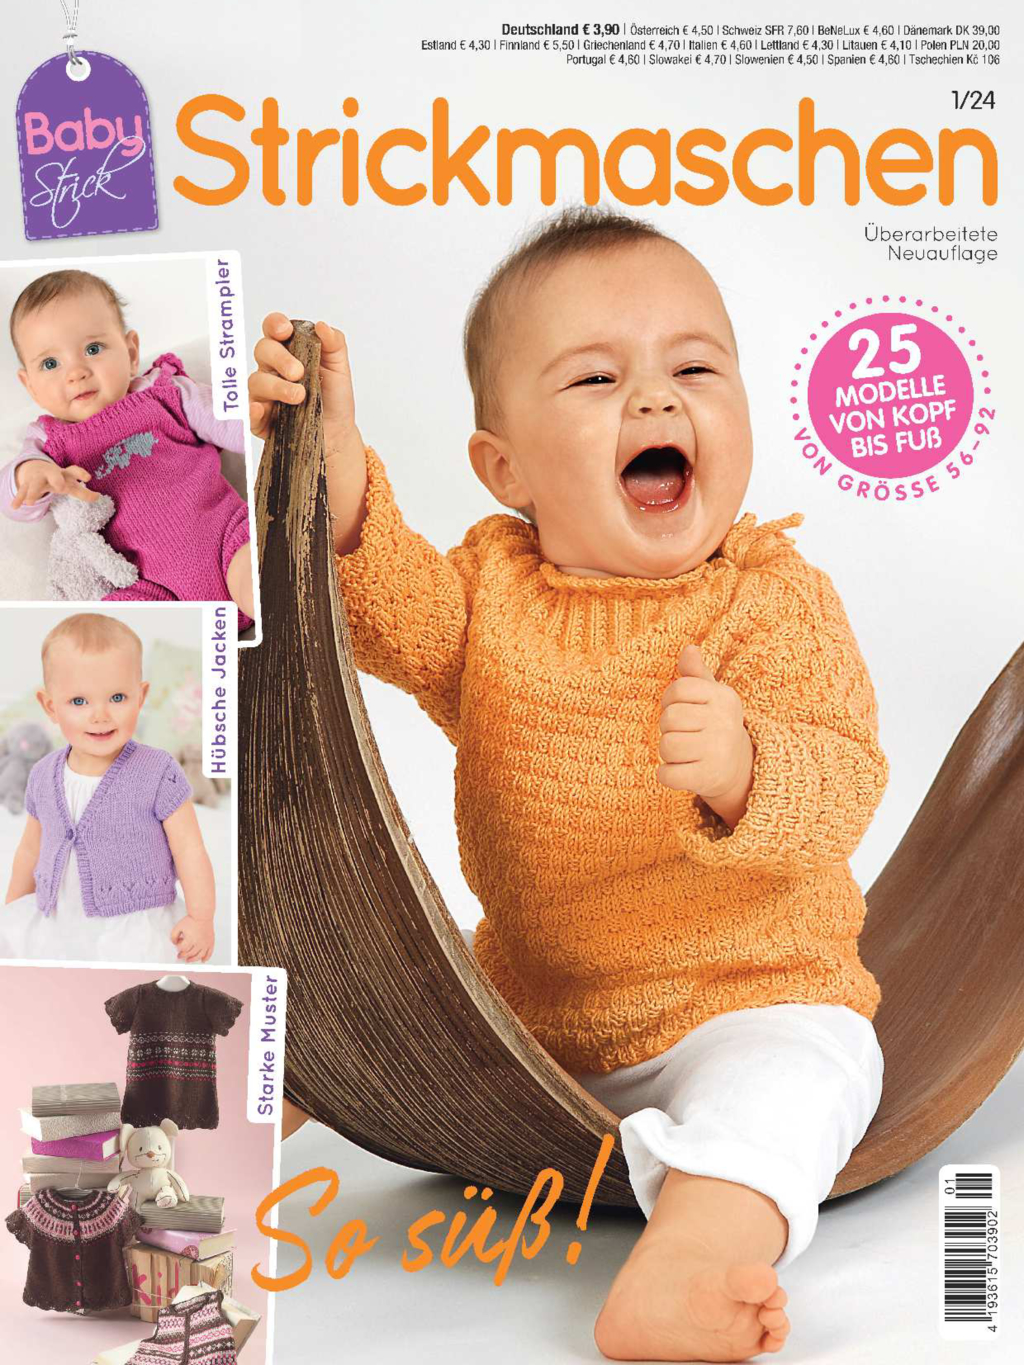 E-Paper: Baby Strick 24001 - Strickmaschen